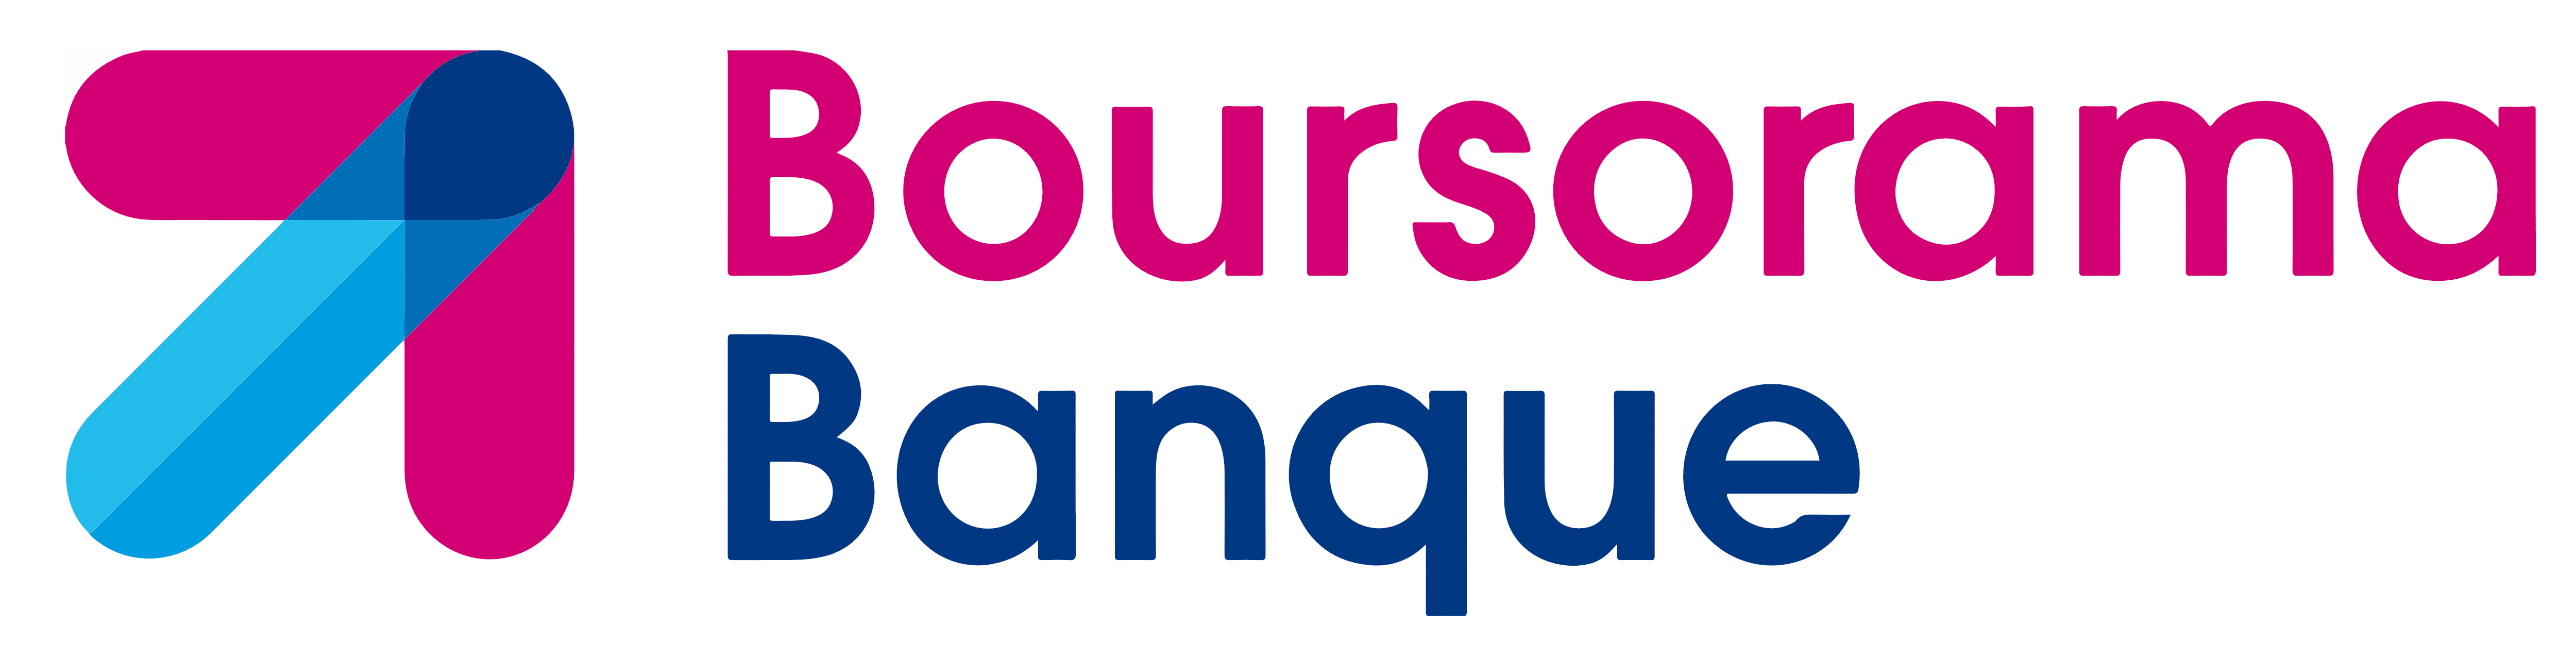 boursorama_logo